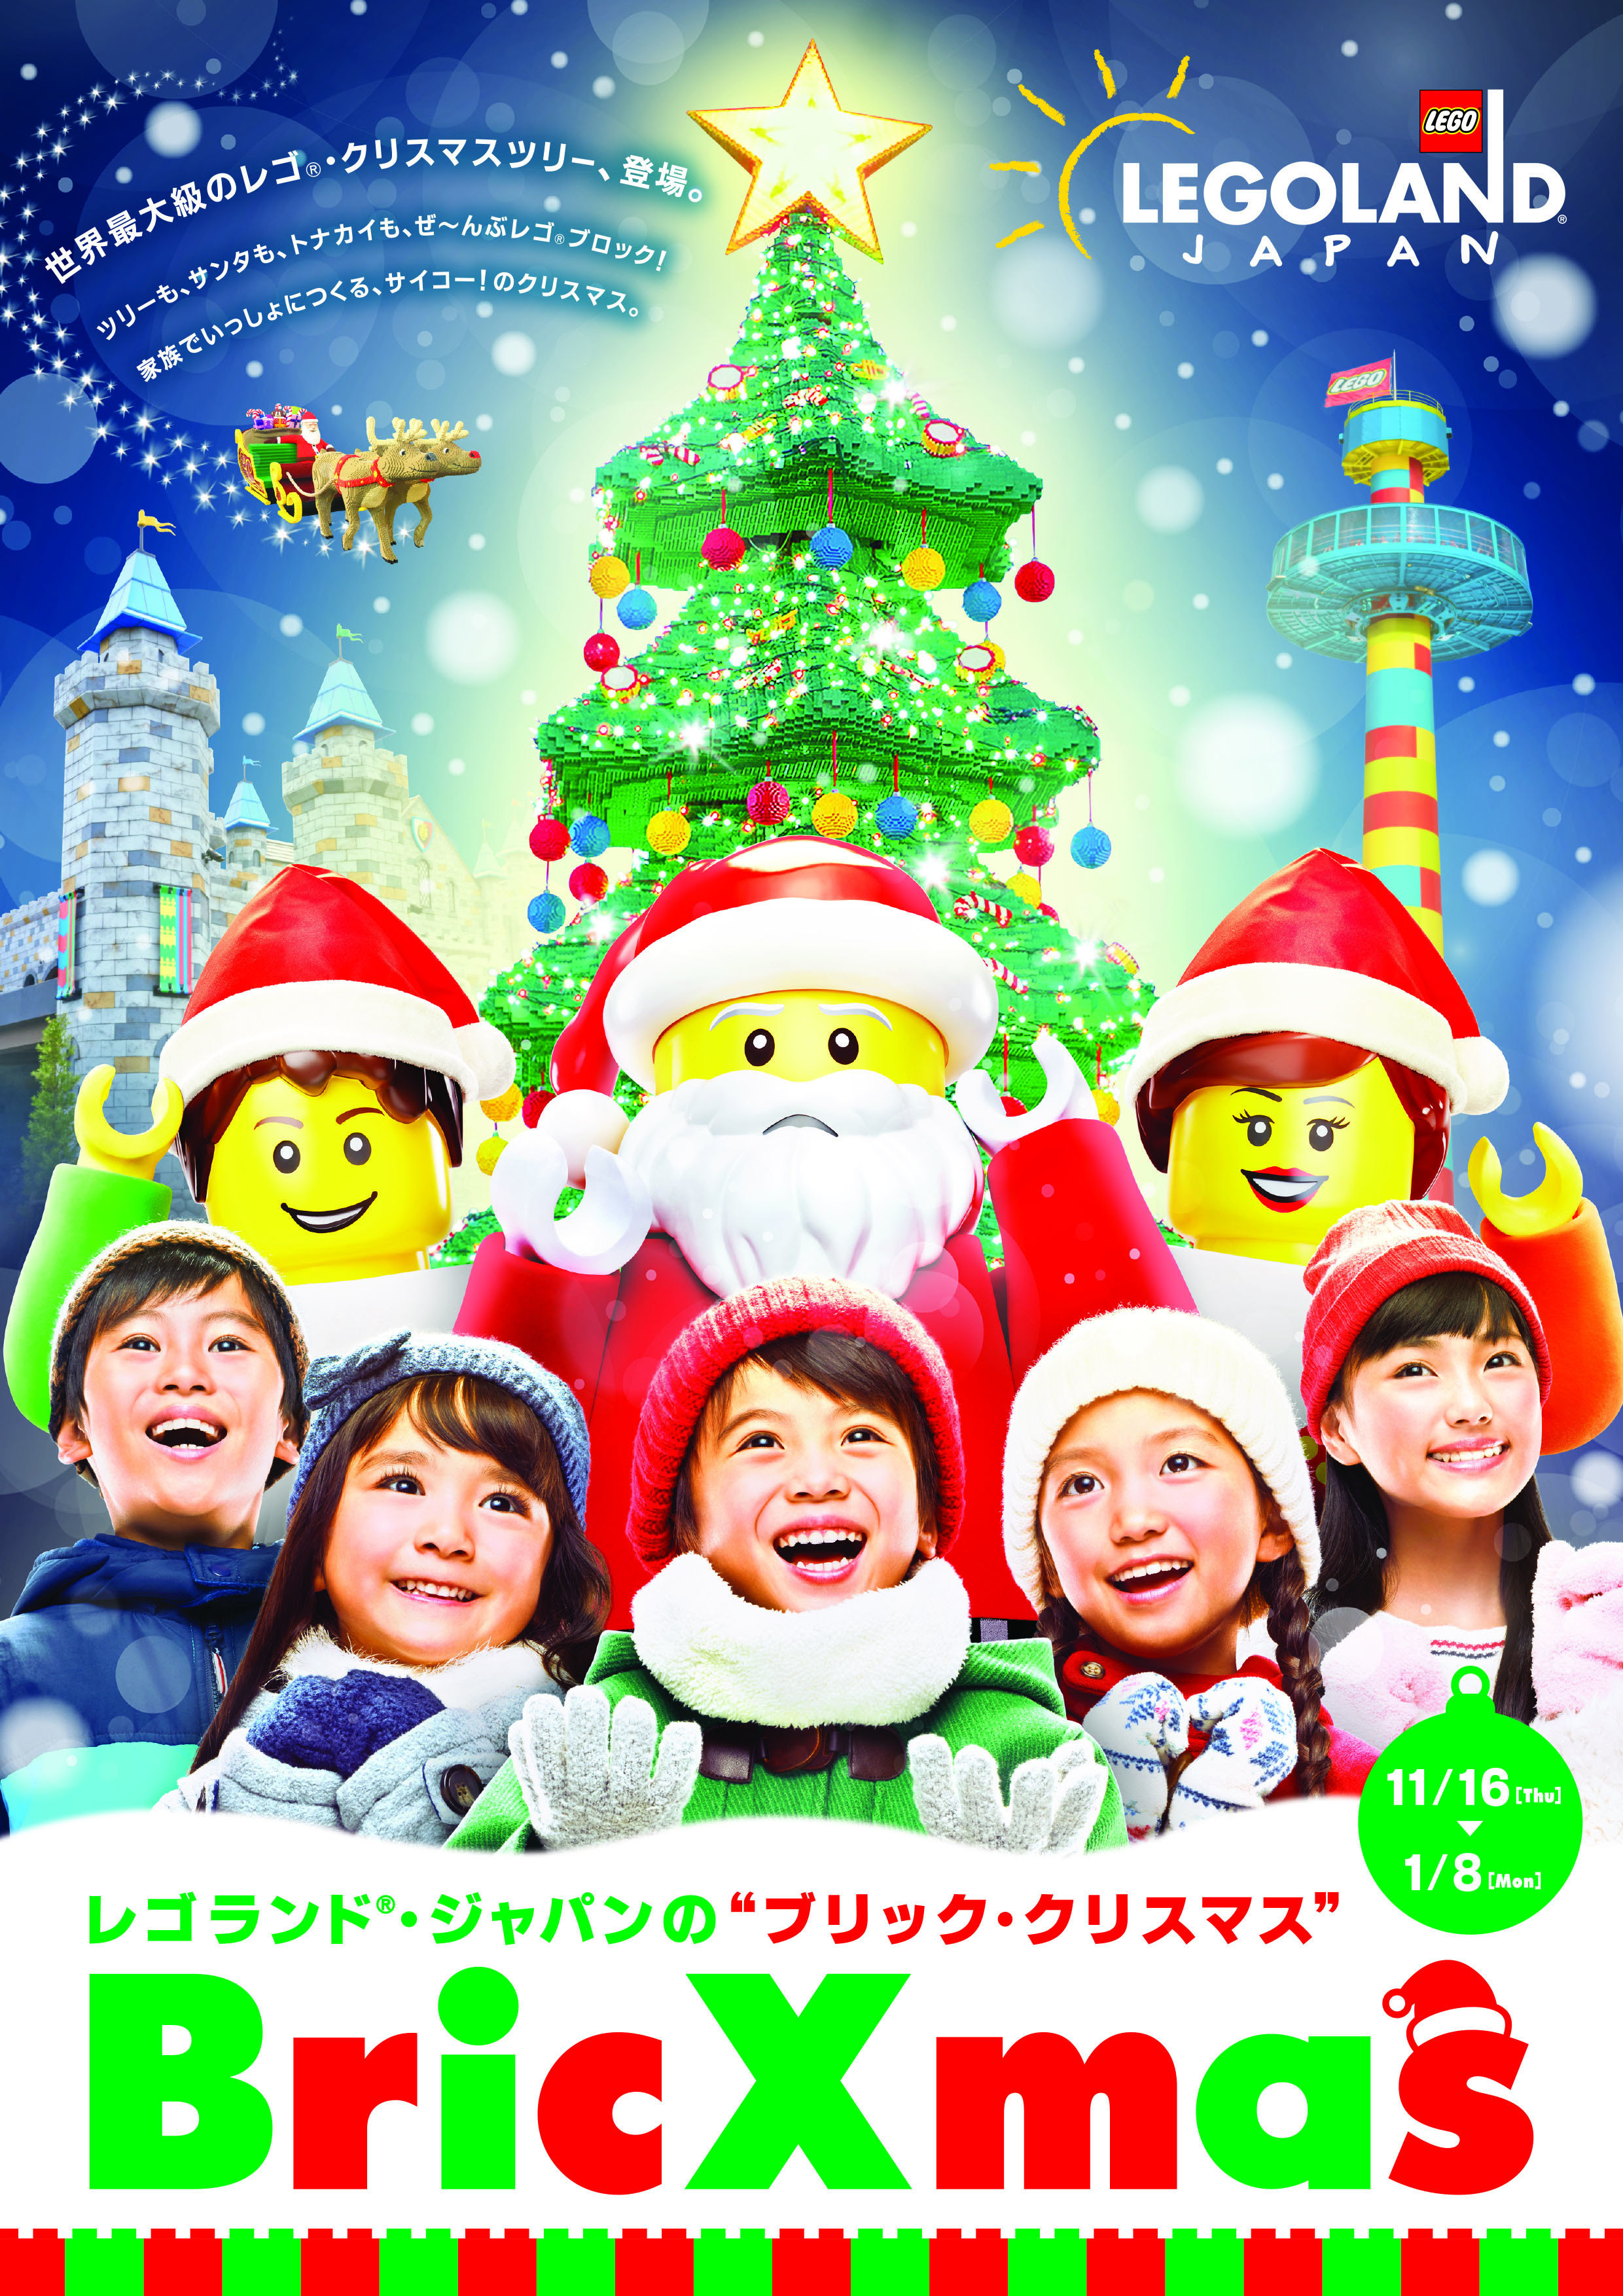 家族で一日楽しめる屋外型キッズテーマパークlegoland Japan クリスマスイベント Bricxmas を開催 Spice エンタメ特化型情報メディア スパイス